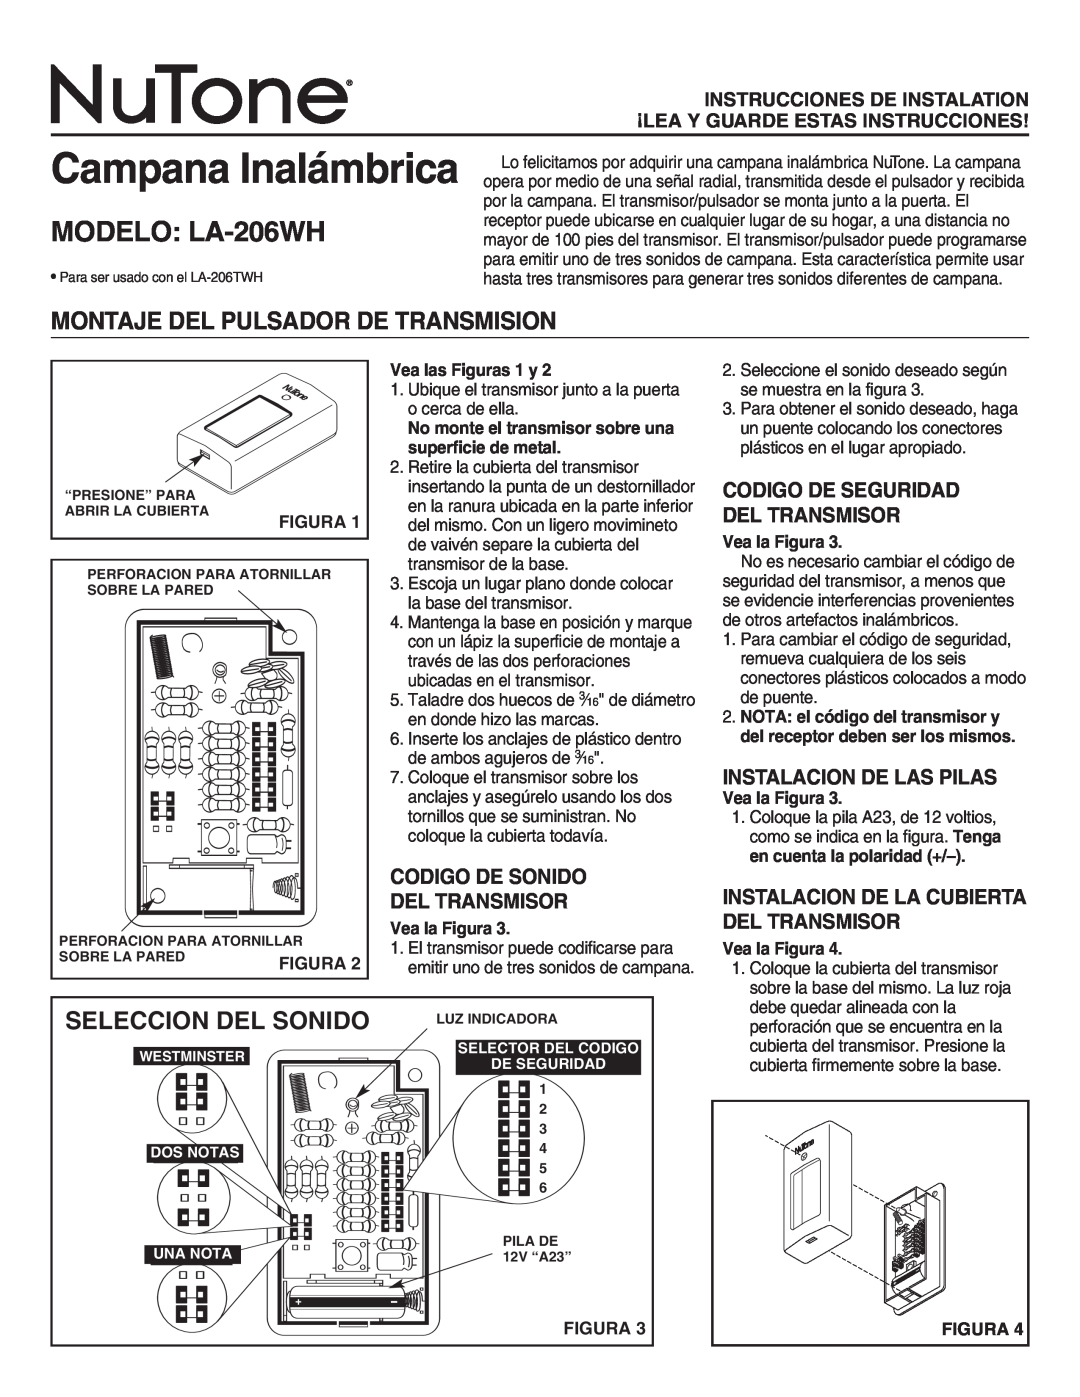 NuTone LA-206WH manual Montaje Del Pulsador De Transmision, Seleccion Del Sonido, Codigo De Sonido Del Transmisor 